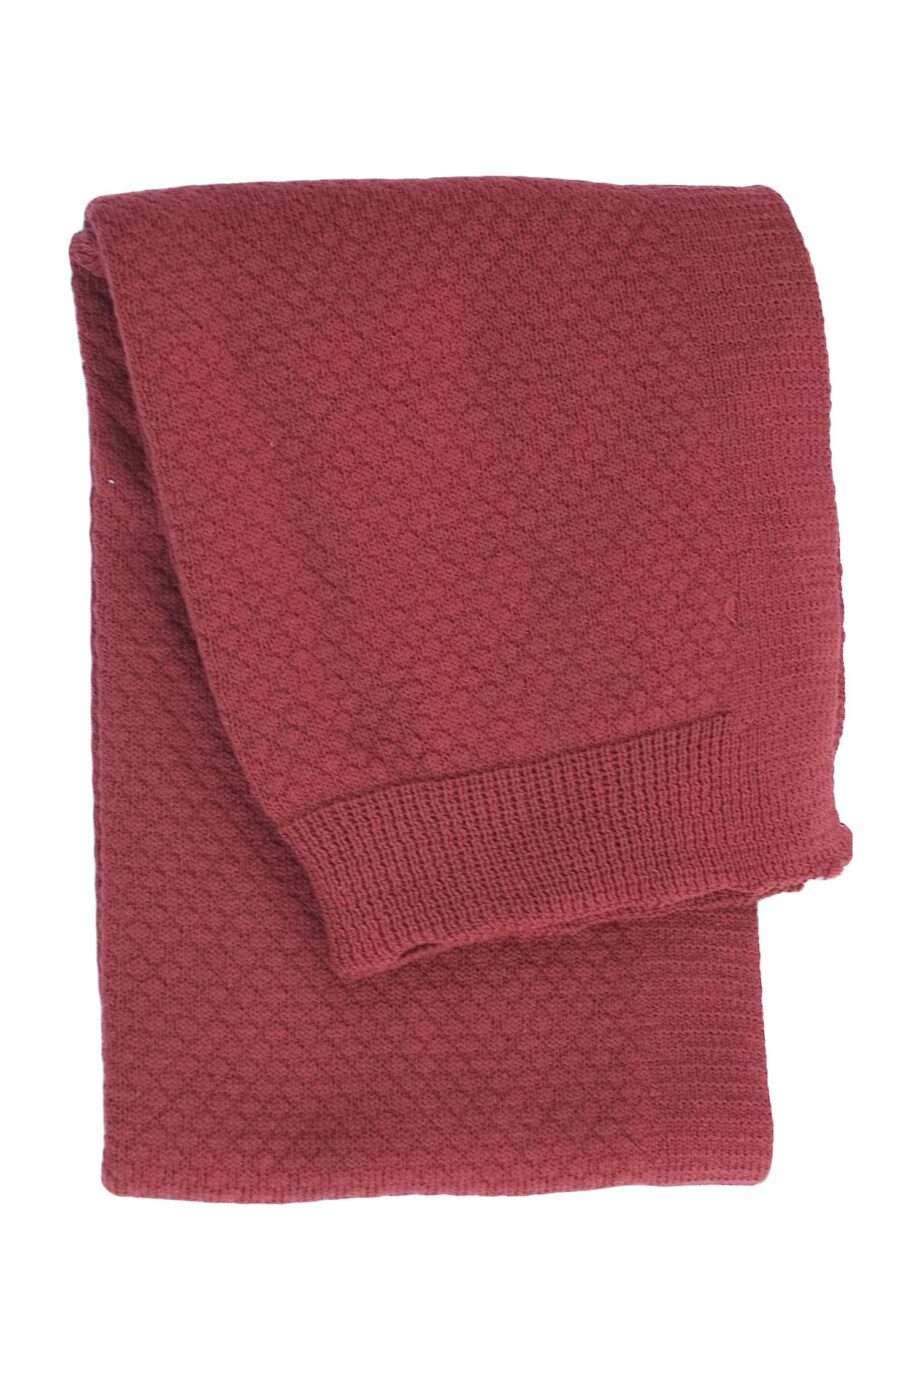 liz chillipepper knitted cotton little blanket medium